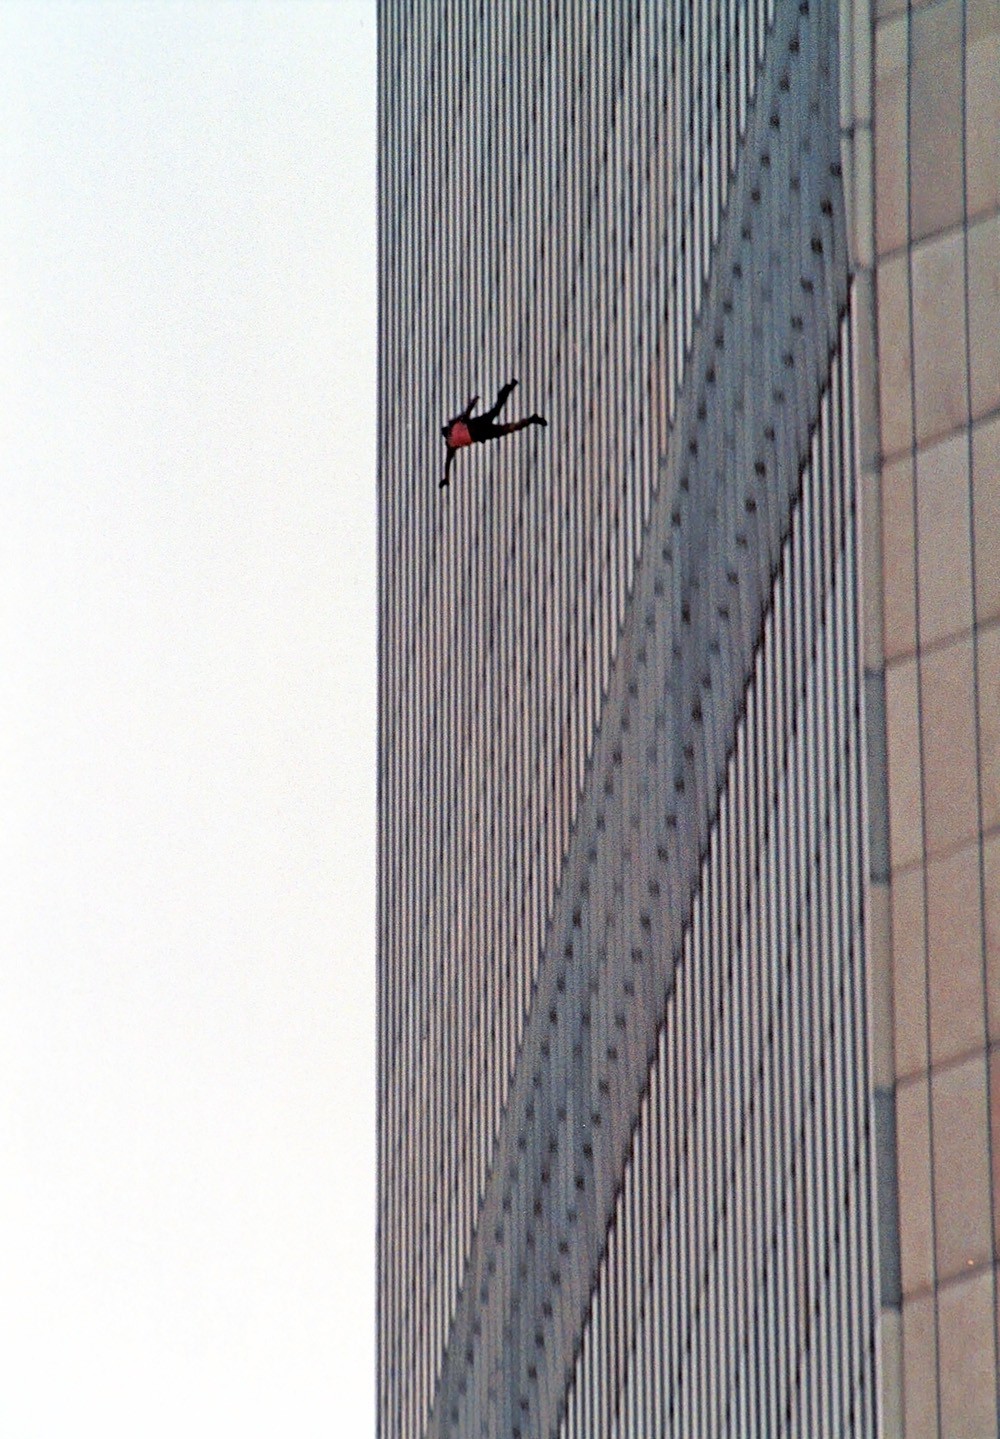 фотография падающий человек 11 сентября